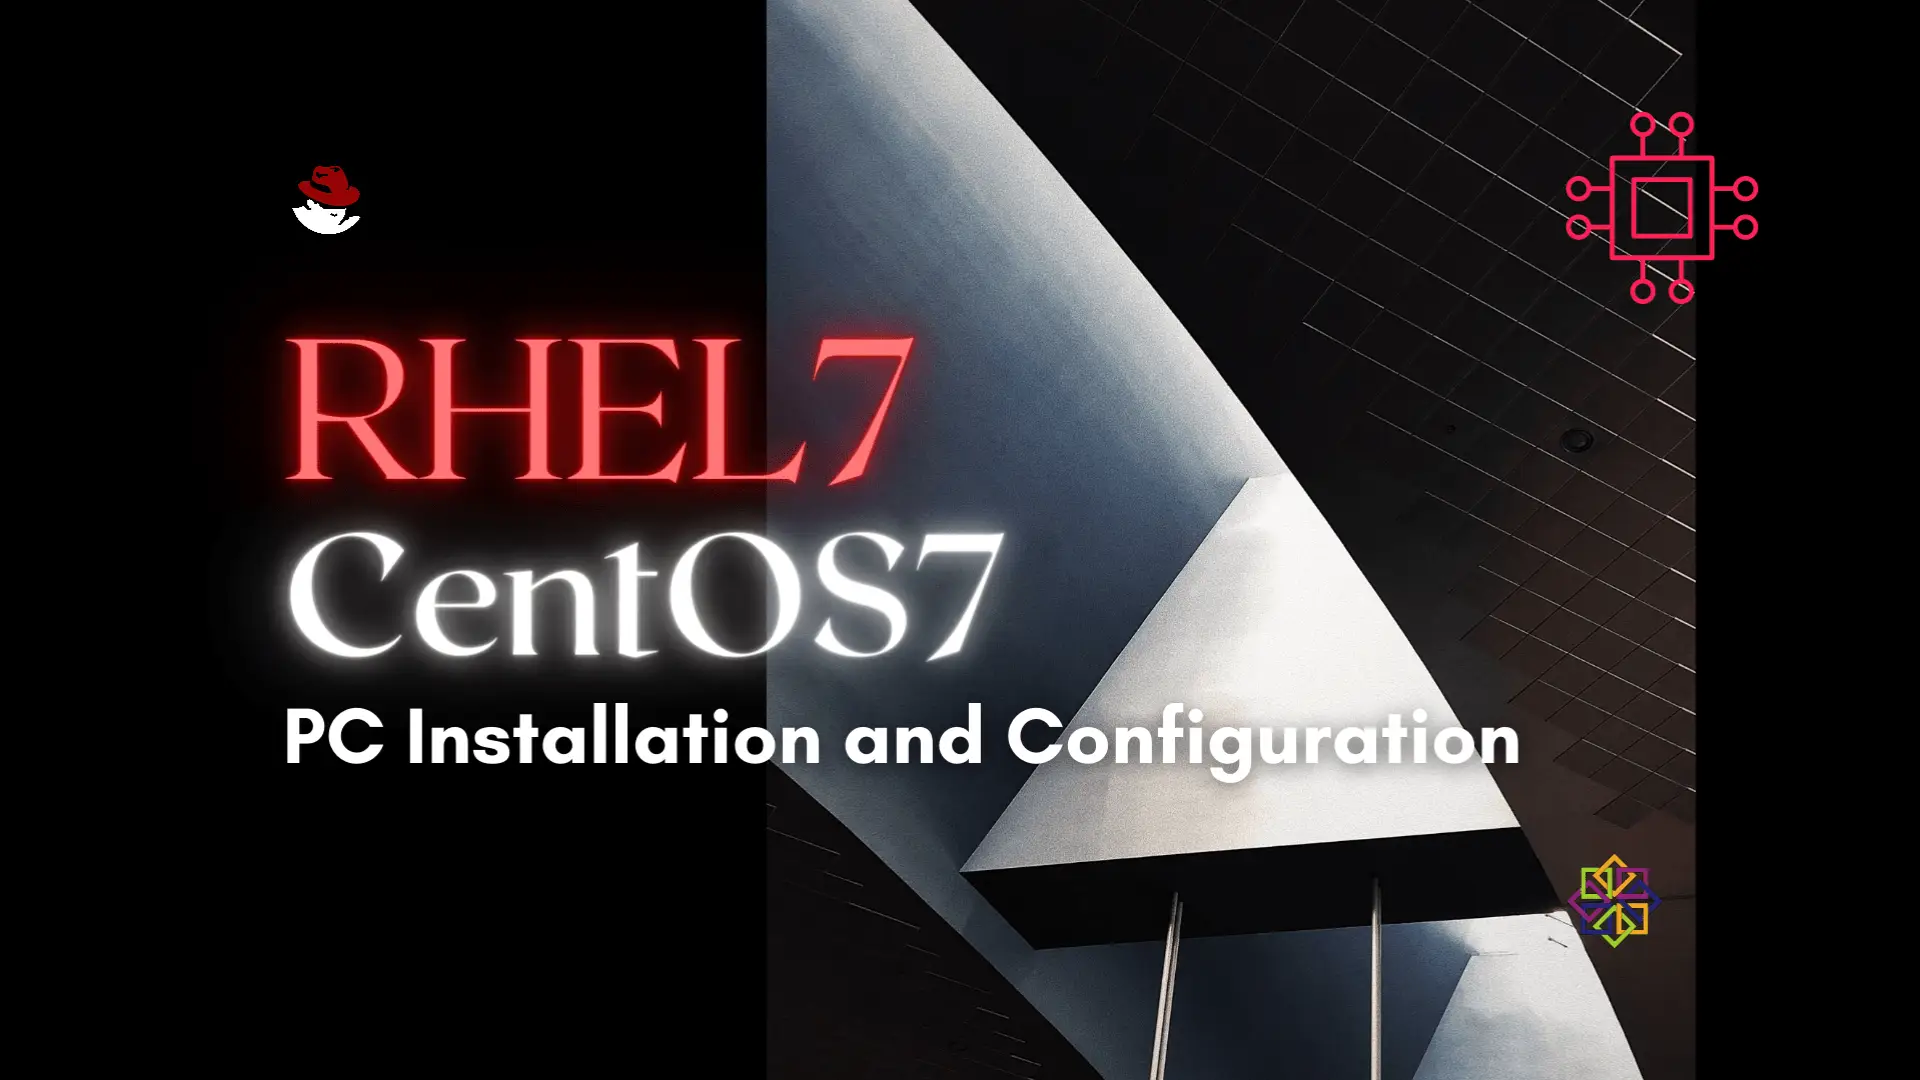 Installing RHEL7 or CentOS7